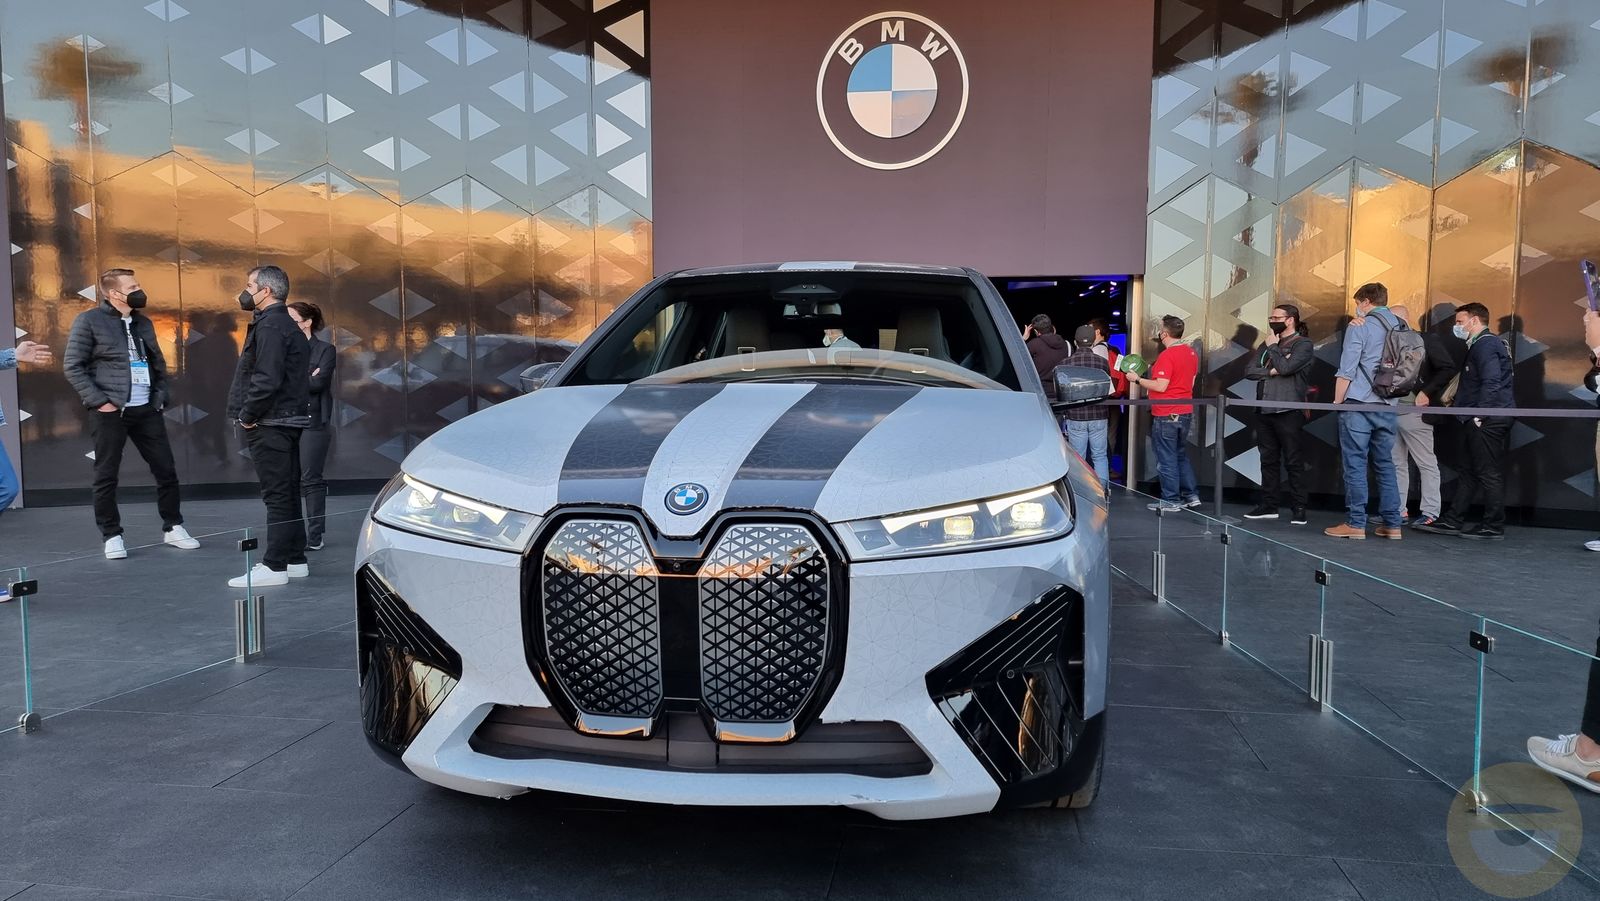 Η BMW παρουσιάζει τεχνολογία βαφής που επιτρέπει τη στιγμιαία αλλαγή χρωμάτων στα οχήματα